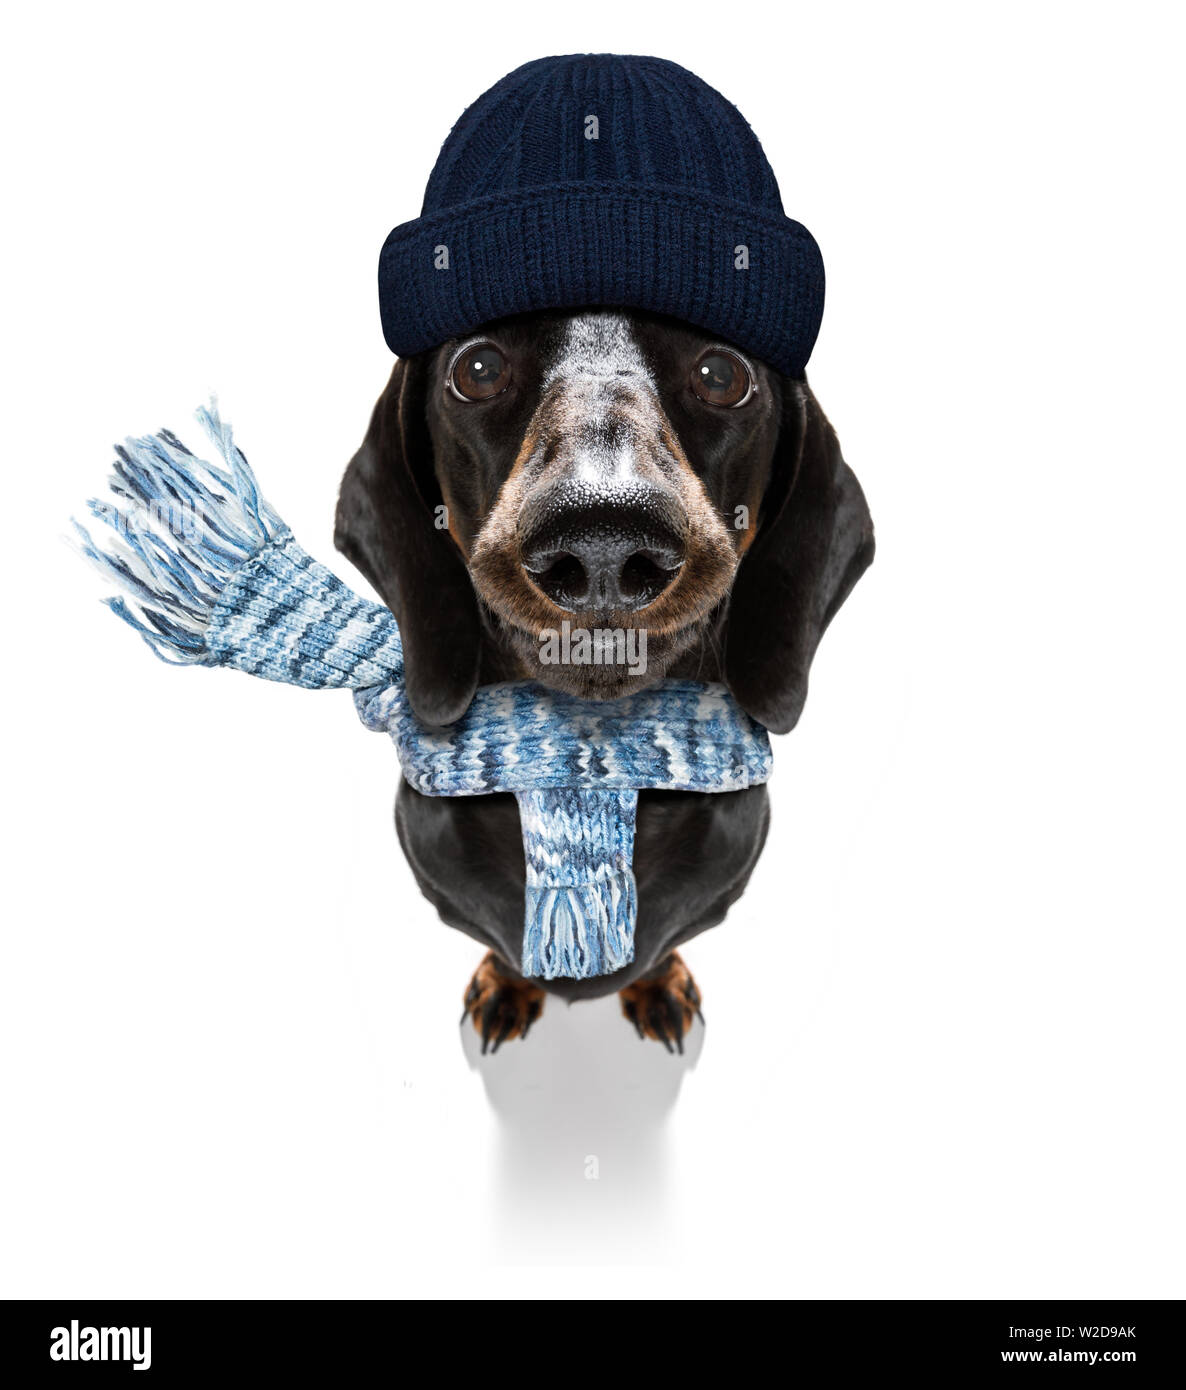 Einfrieren dackel Wurst Hund mit Wolle Schal und Mütze im Winter oder Herbst, auf weißem Hintergrund Stockfoto